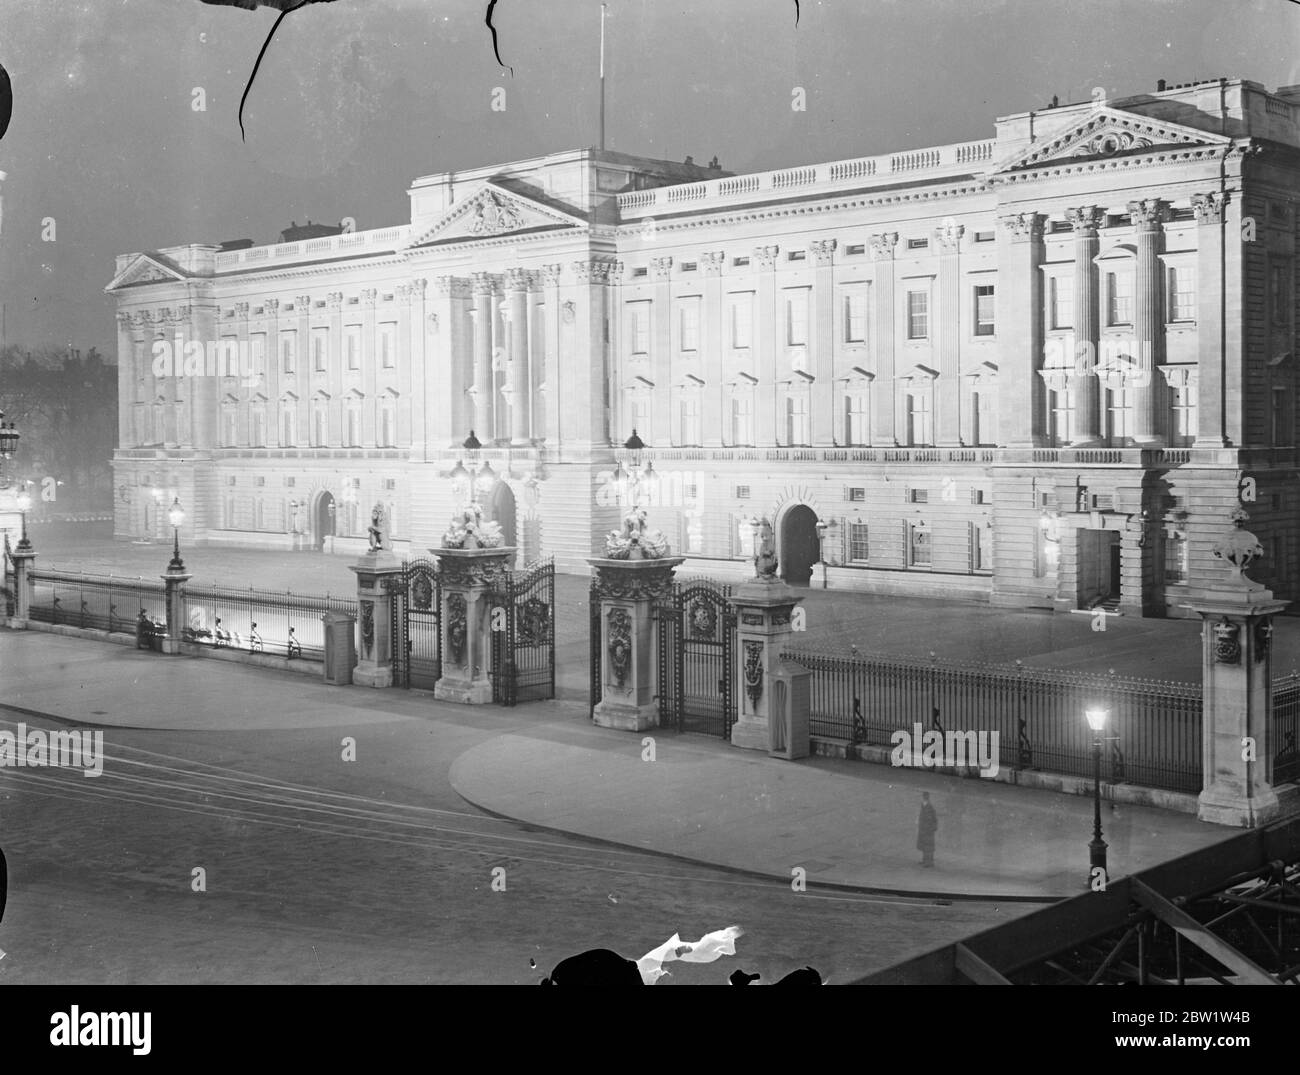 Le premier test de l'éclairage de Coronation a été effectué au Palais de Buckingham. Spectacles photo : le palais de Buckingham illuminé pendant le test. 19 avril 1937 Banque D'Images